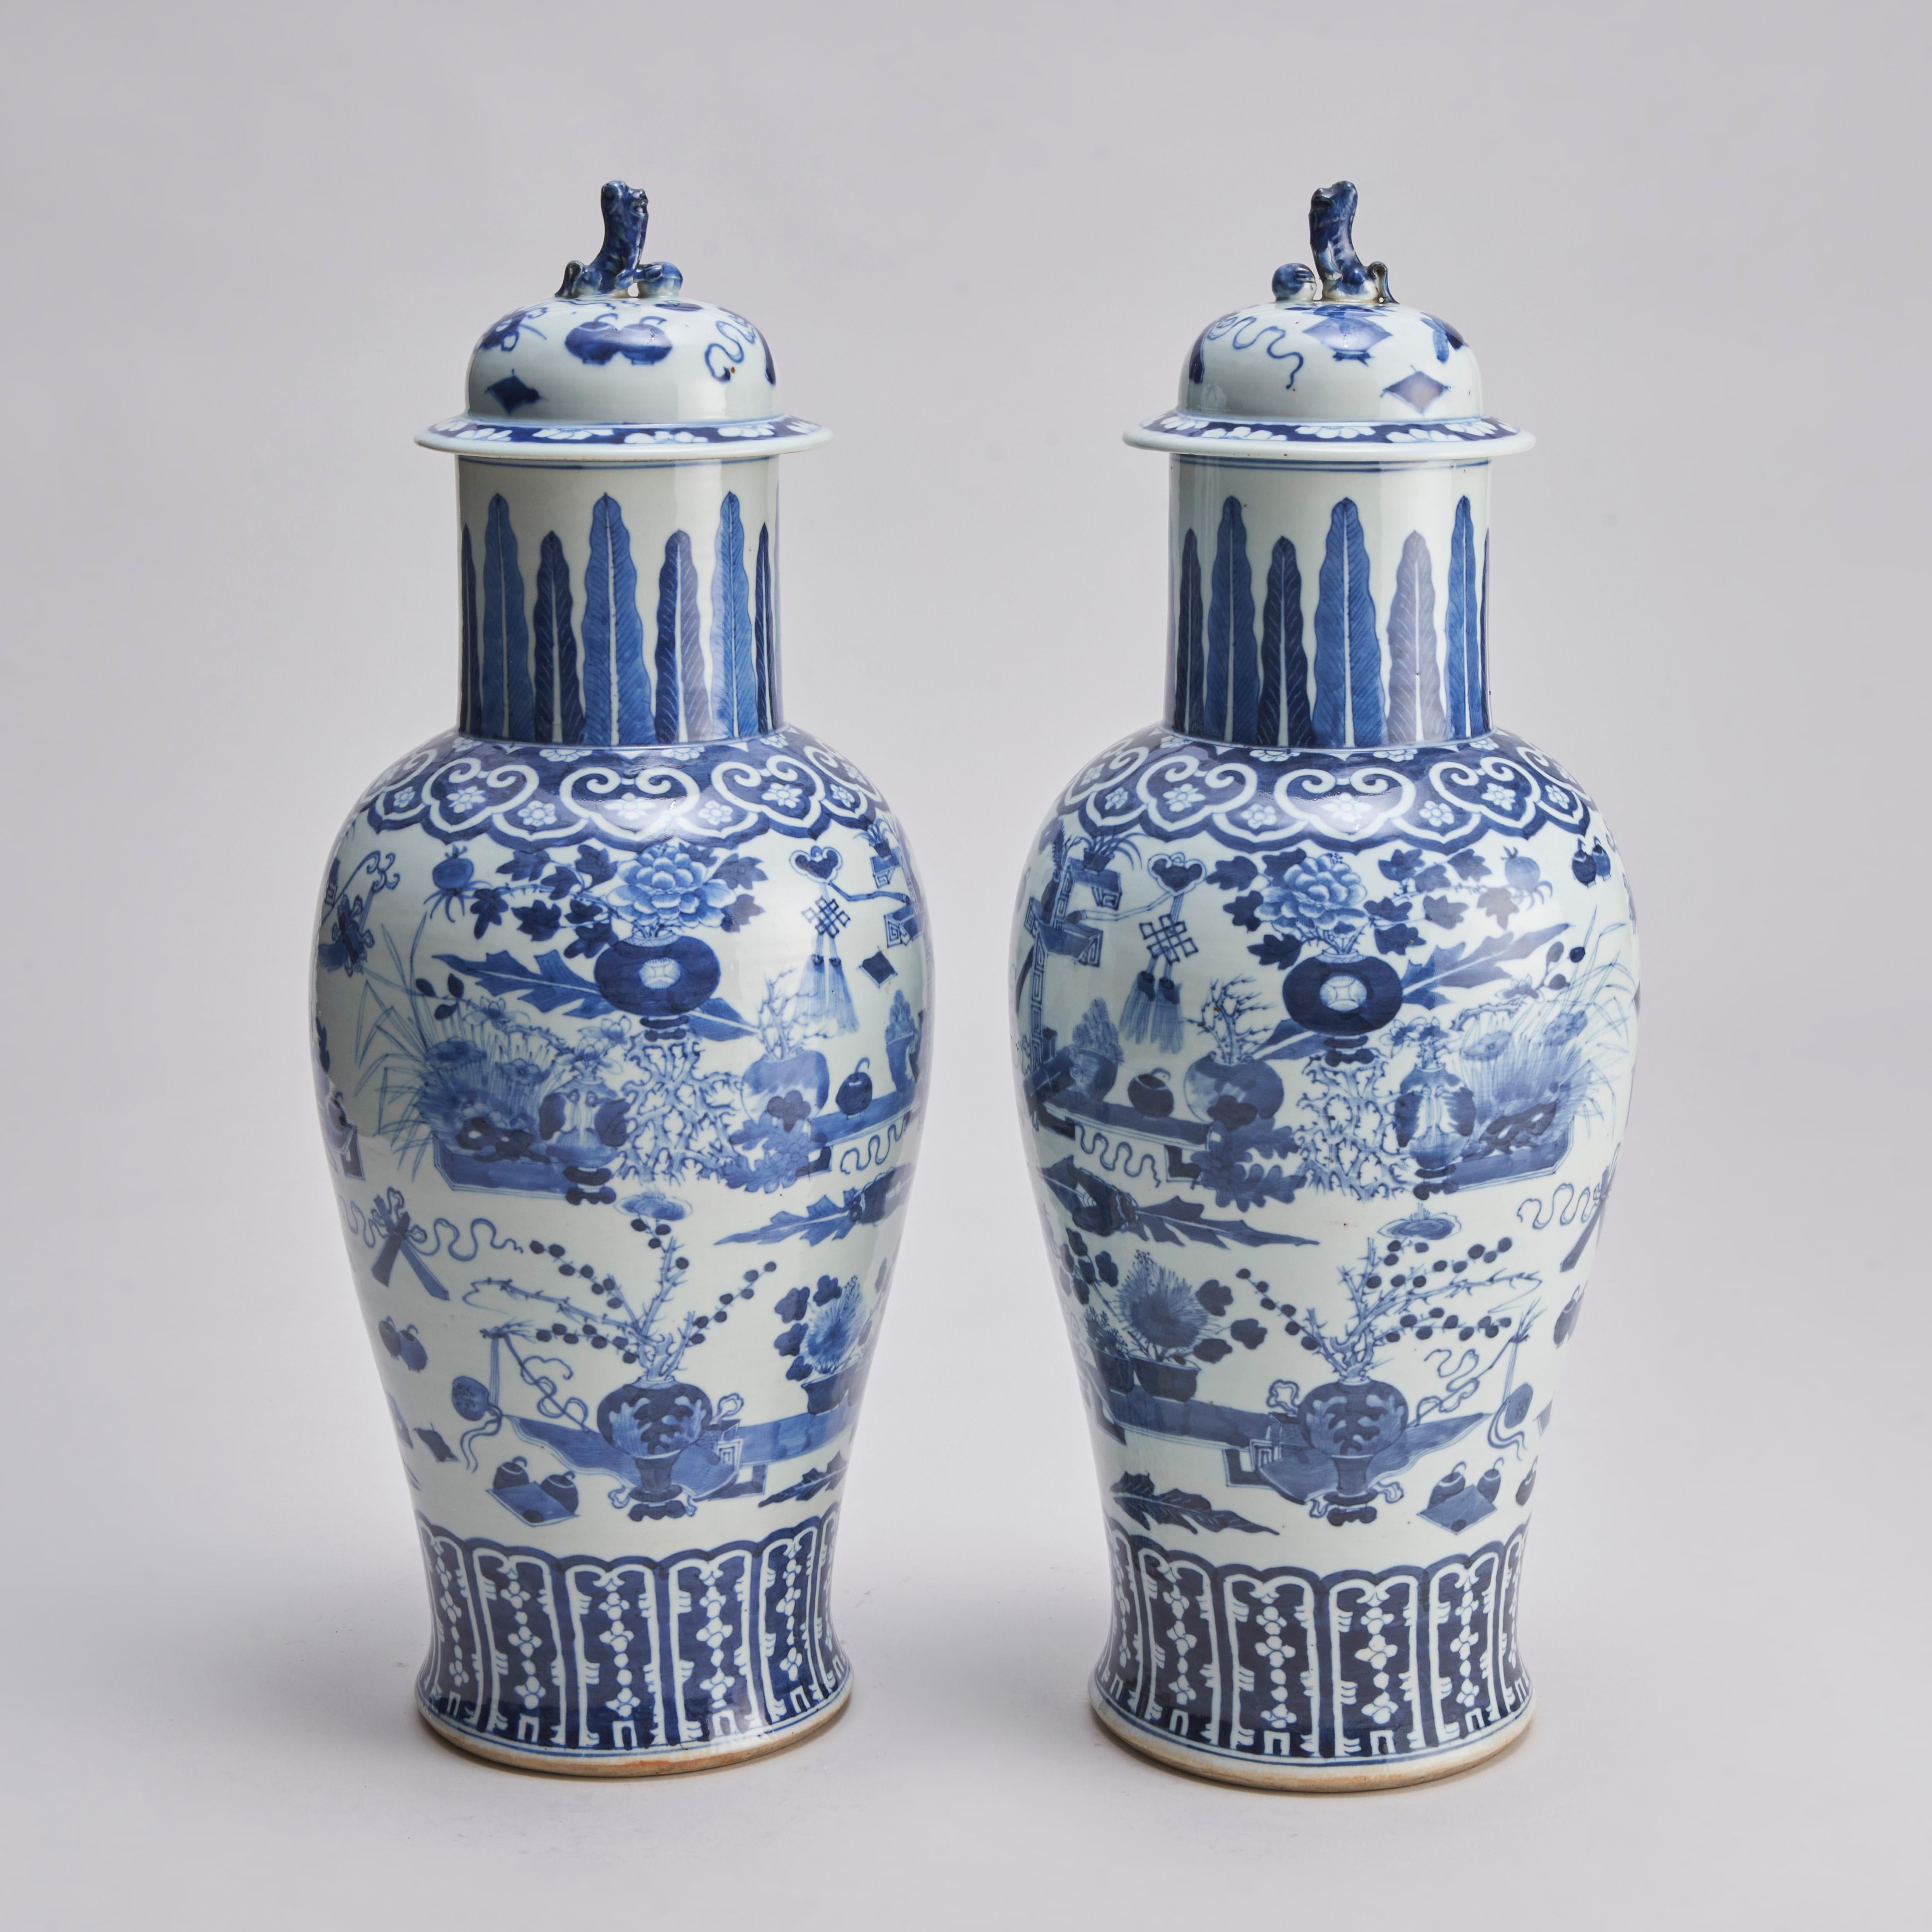 Une paire de vases chinois du XIXe siècle en bleu et blanc, finement décorés d'arrangements floraux et d'objets précieux d'érudition tels que des rouleaux, des vases, des arrangements floraux et des instruments d'écriture, ainsi qu'un Penzai (arbre